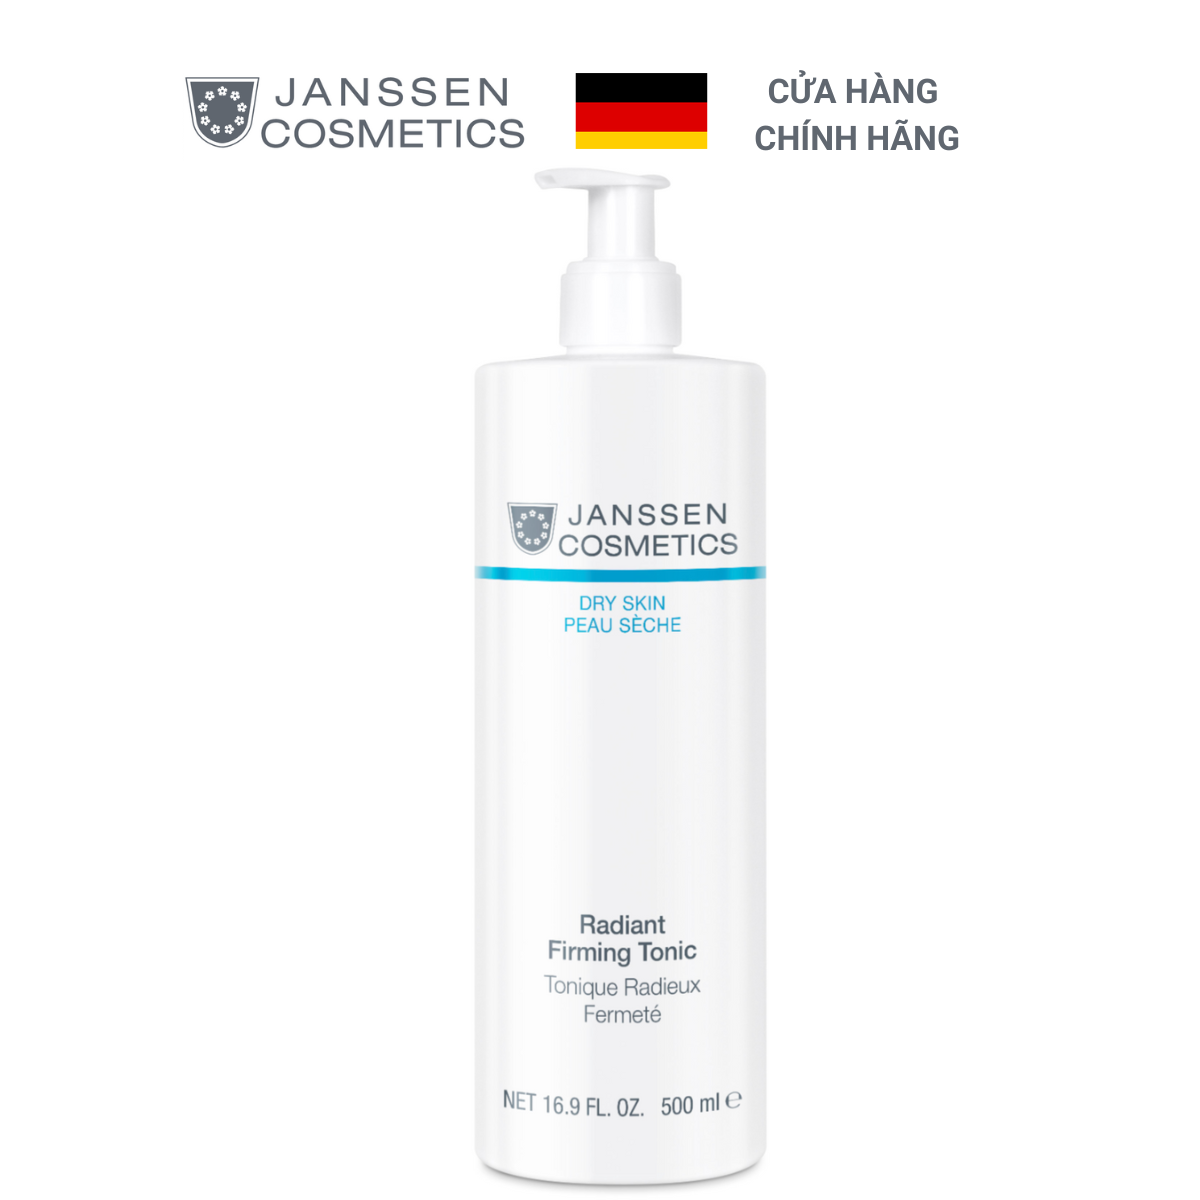  Nước hoa hồng cho da khô - Janssen Cosmetics Radiant Firming Tonic 500ml 